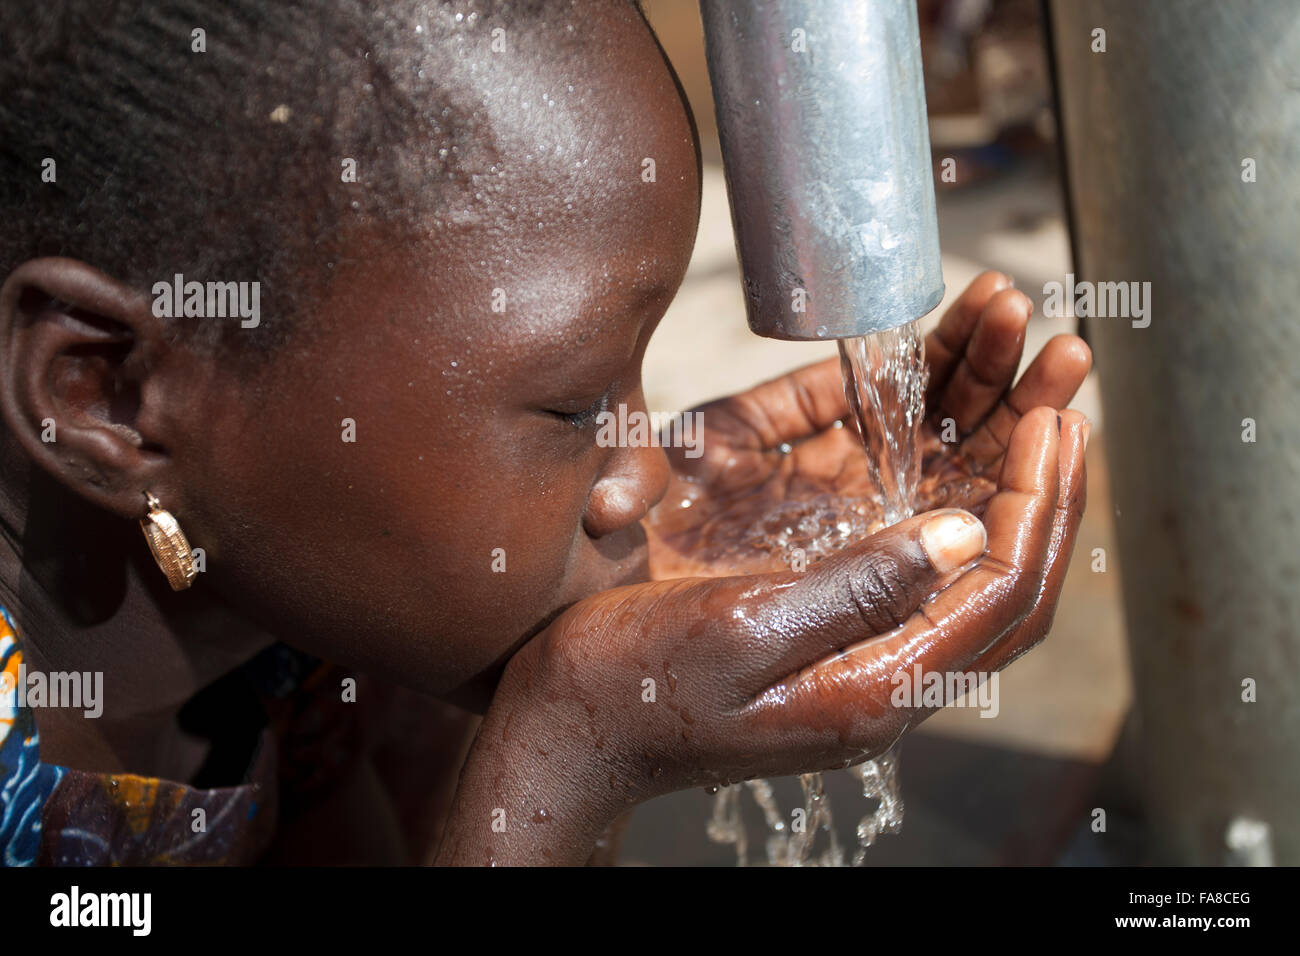 Mädchen bekommen frisches Wasser aus einem Brunnen in Kouka Abteilung in Burkina Faso, W. Afrika. Stockfoto